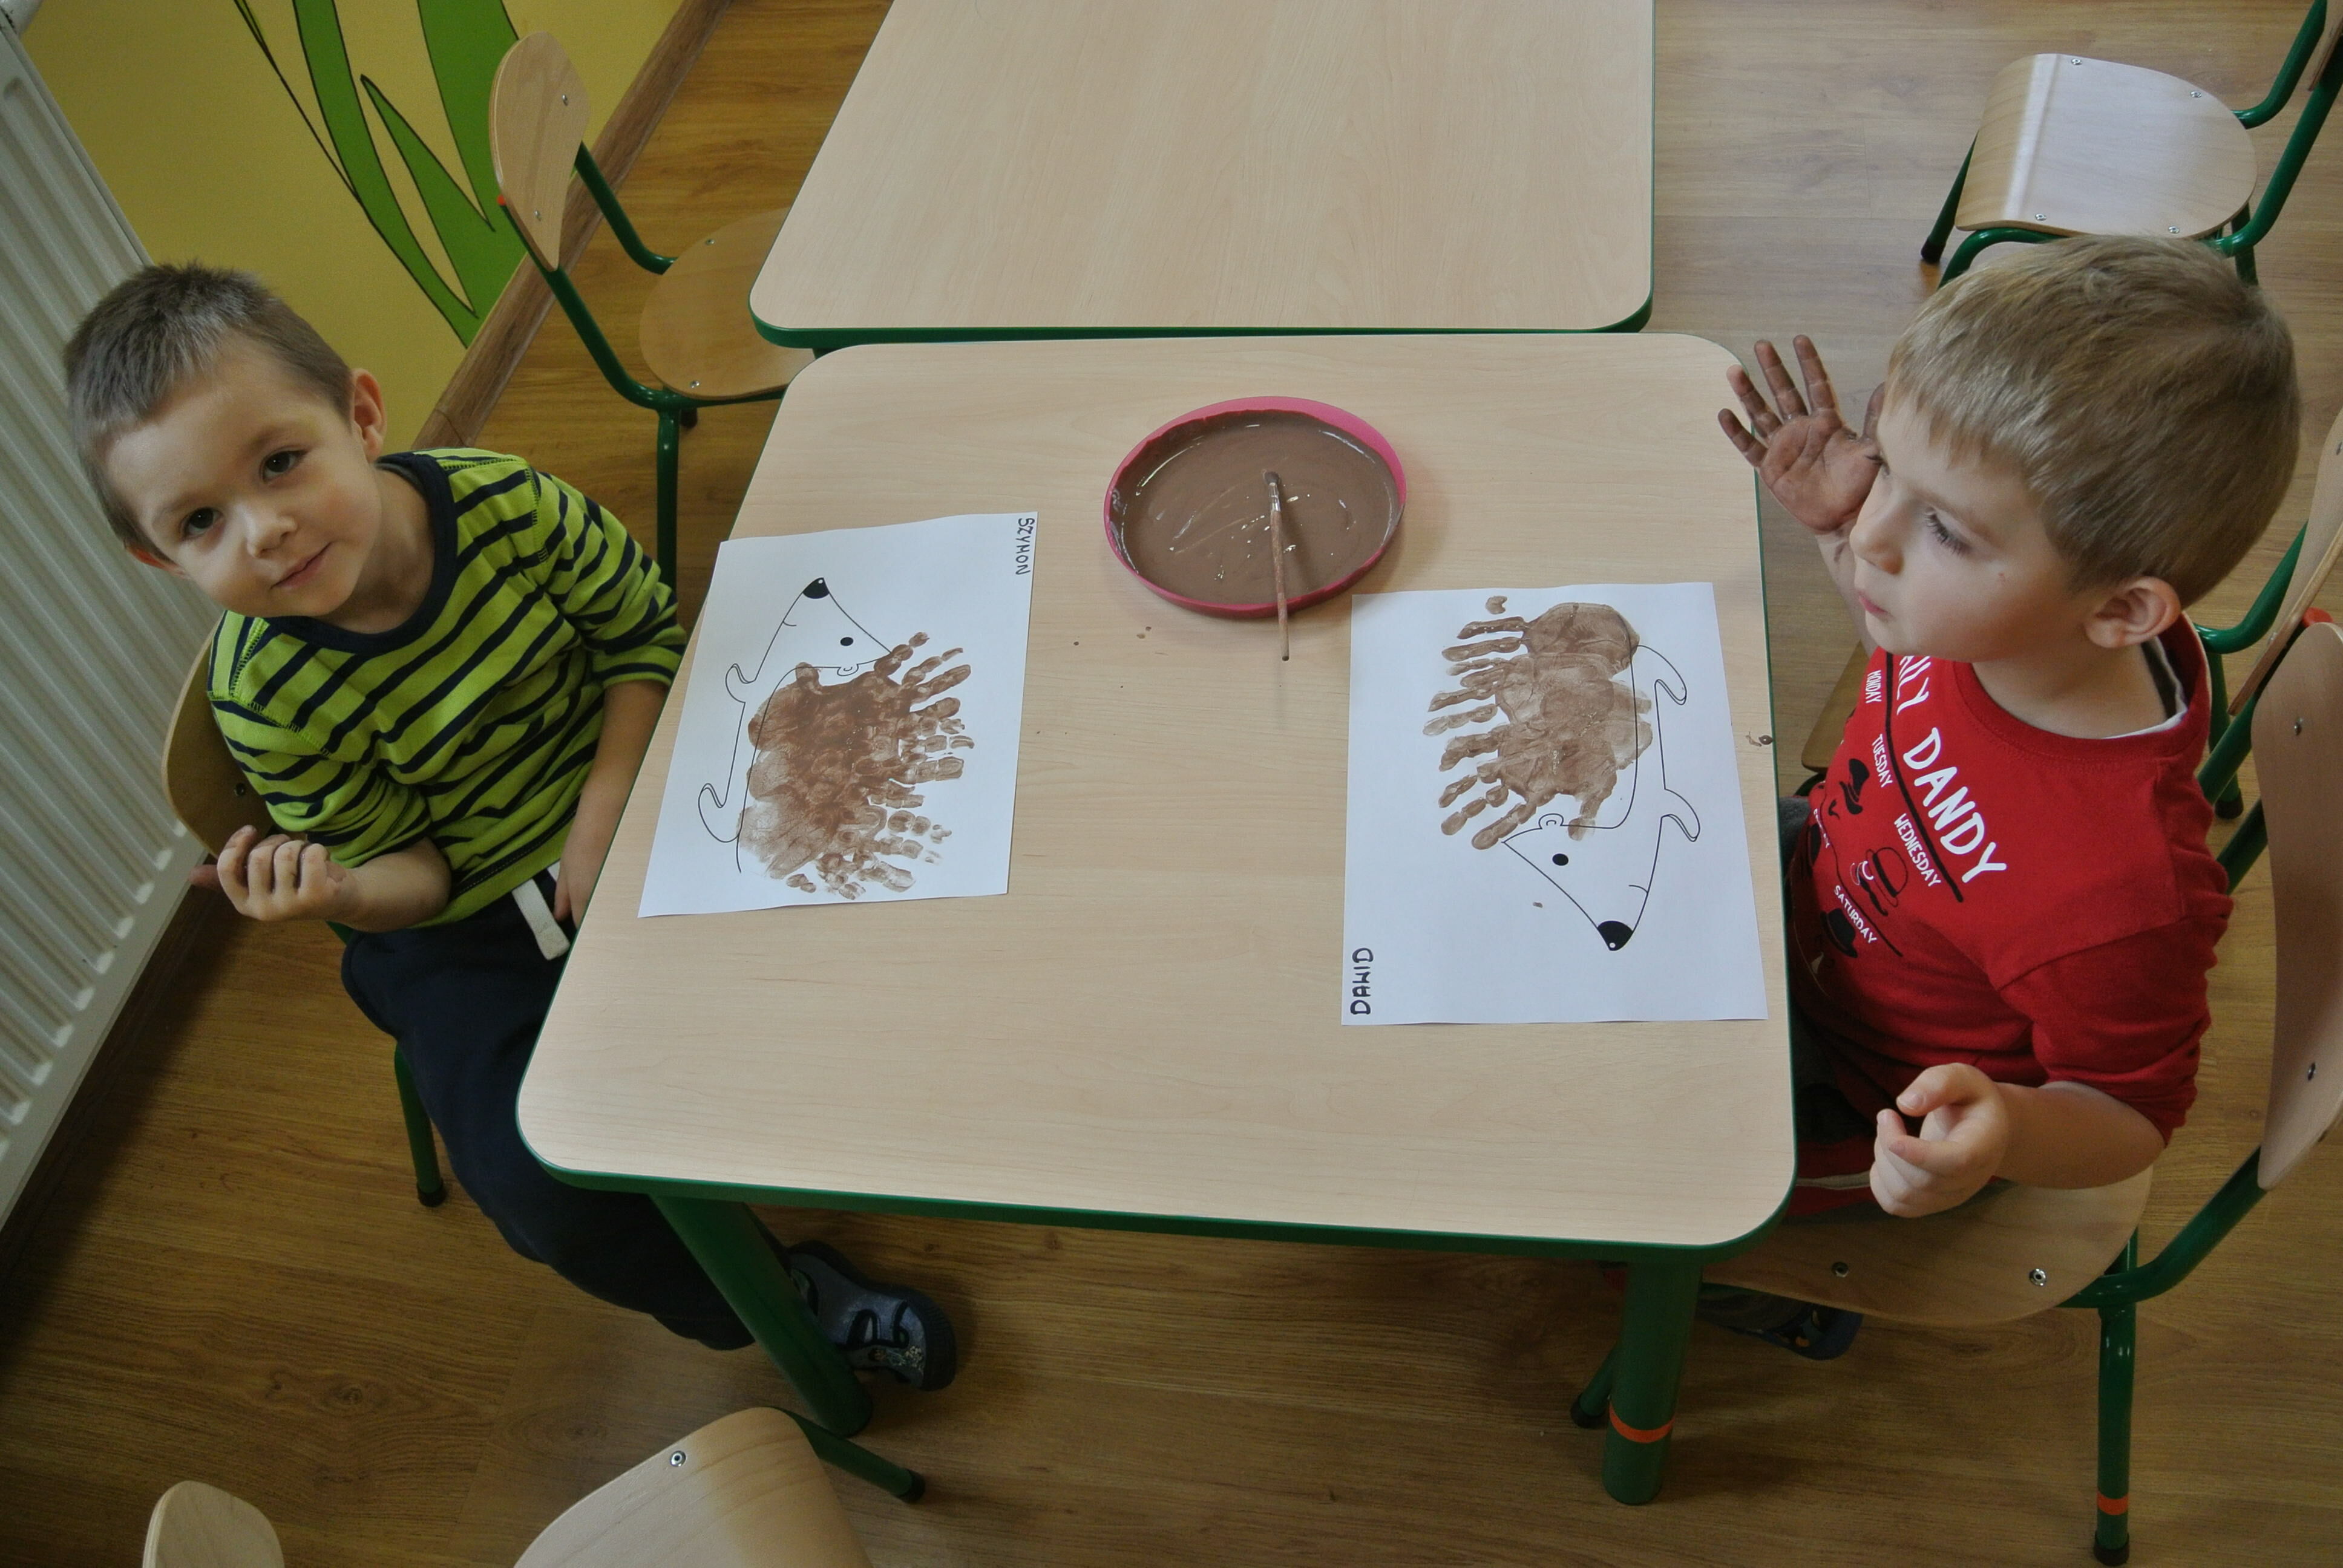 Dwóch chłopców siedzi przy stole z arkuszami papieru z odbitymi odciskami dłoni tworzącymi kształt zwierząt, jeden dziecko unosi rękę w geście pozdrowienia.